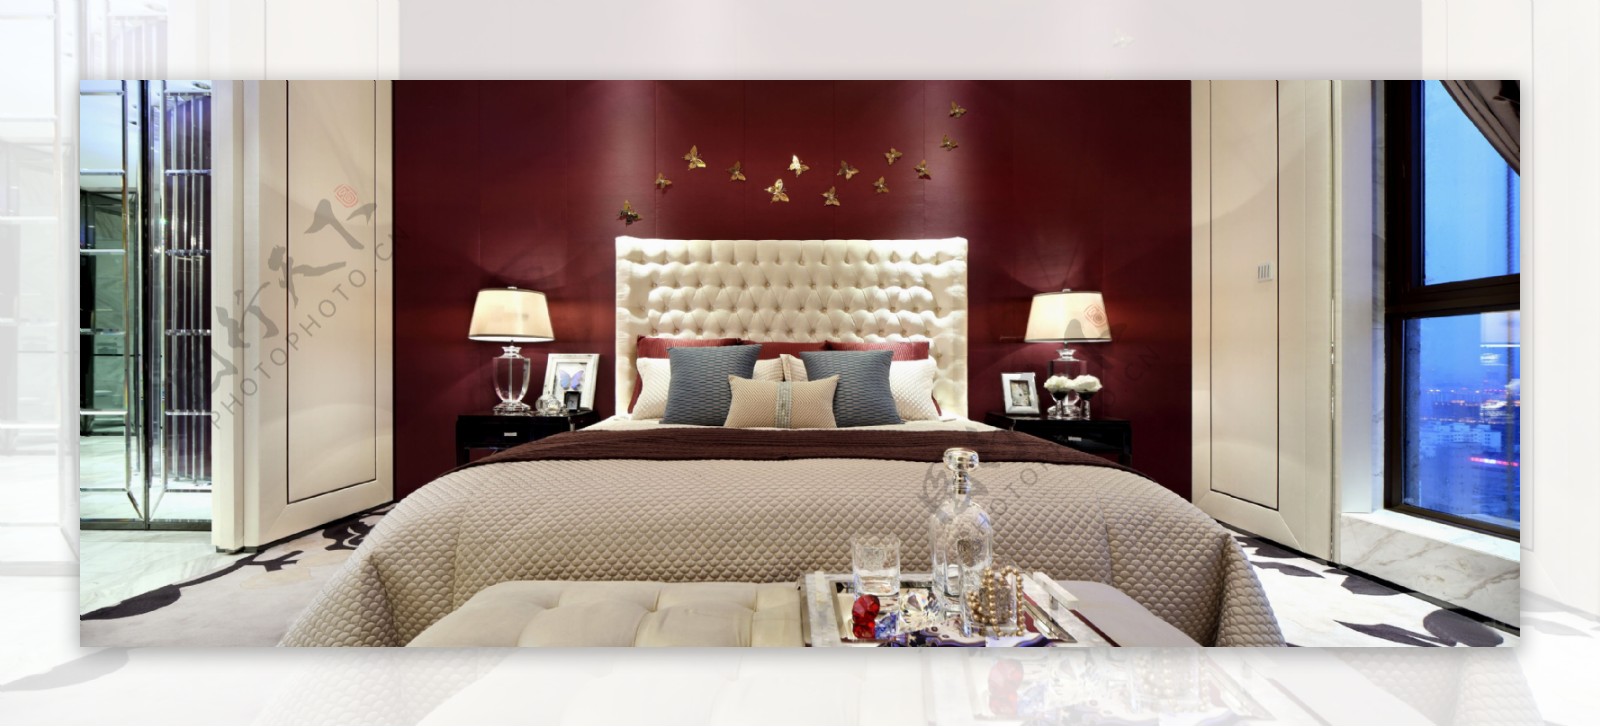 浪漫温馨卧室酒红色背景墙室内装修效果图